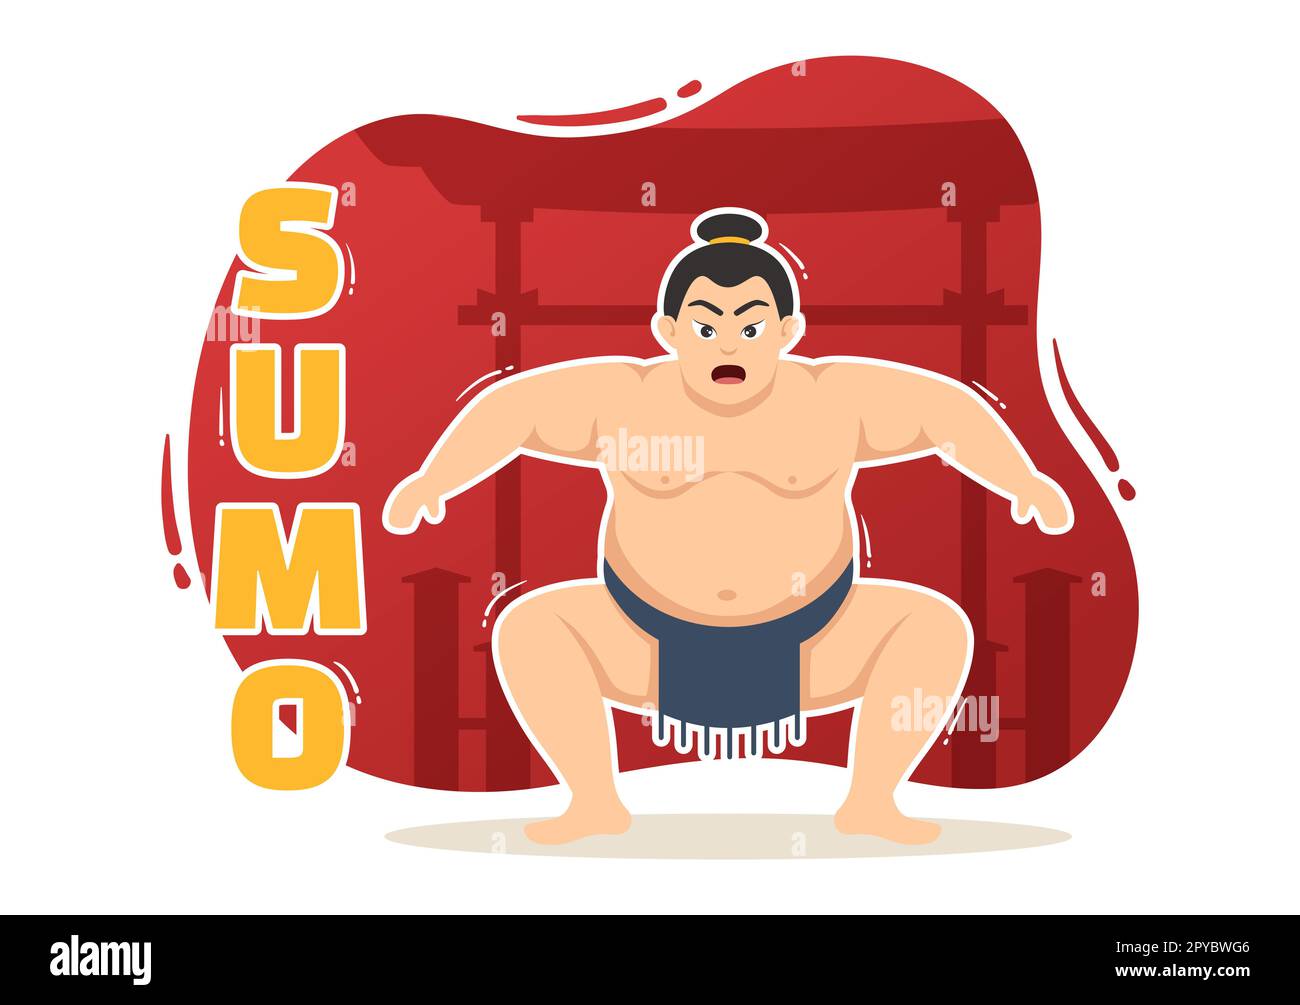 Sumo Wrestler Illustration mit Kampfsport gegen traditionelle japanische Kampfkunst und sportliche Aktivitäten in flachen, handgezeichneten Landing-Page-Vorlagen für Cartoons Stockfoto